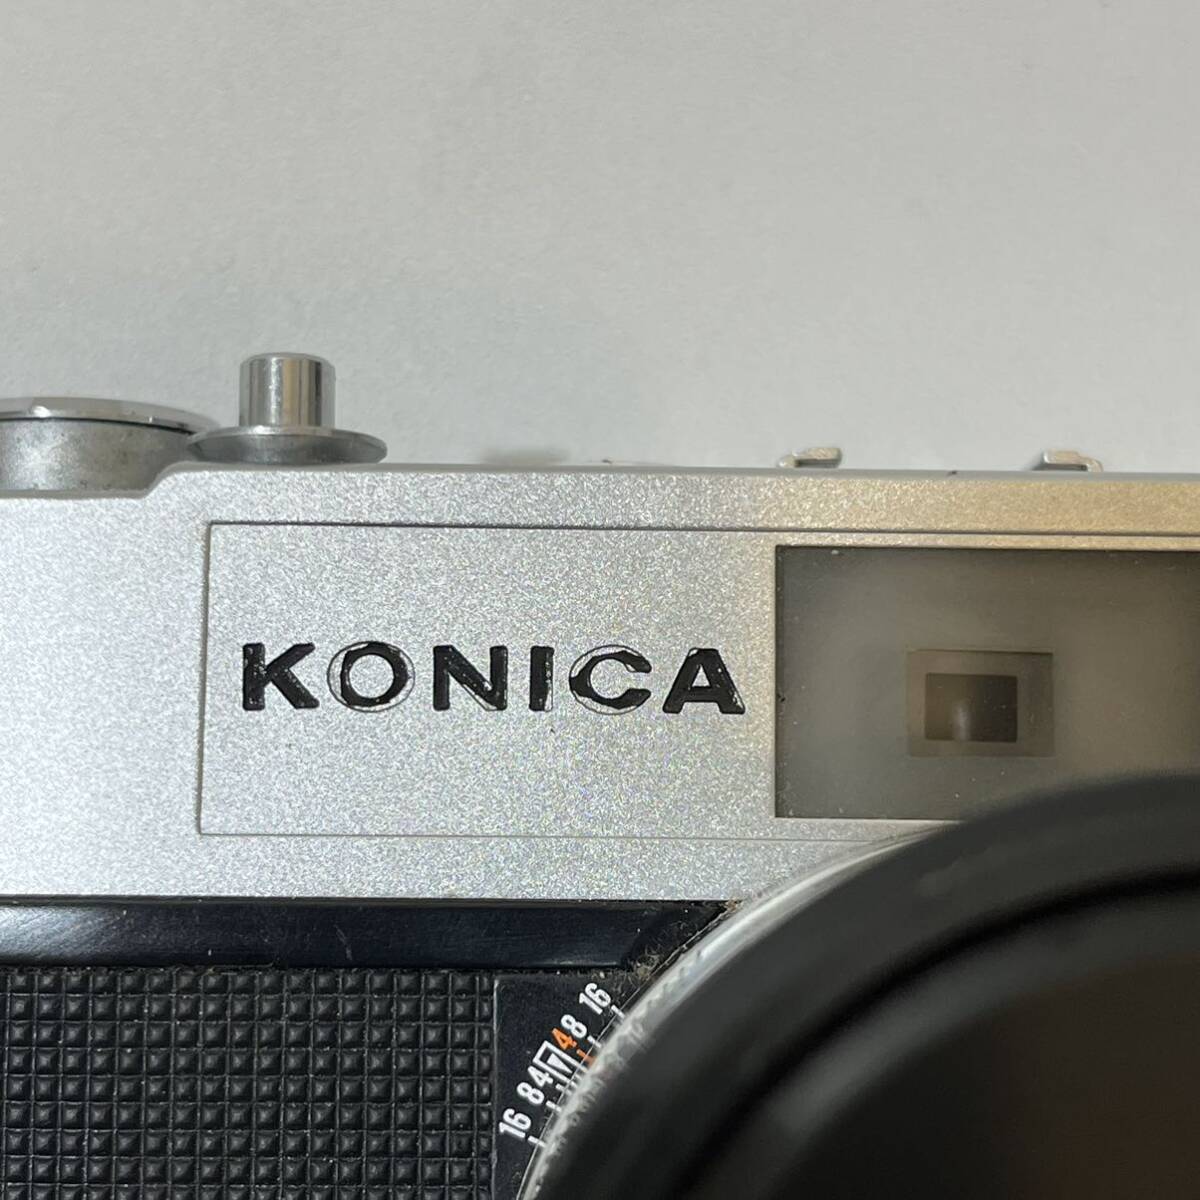 【TF0412】KONICA フィルムカメラ HEXANON auto S1.6 1:1.6 F=45mm 55mm SL-C 動作未確認 コニカ コレクション アンティーク ビンテージの画像2